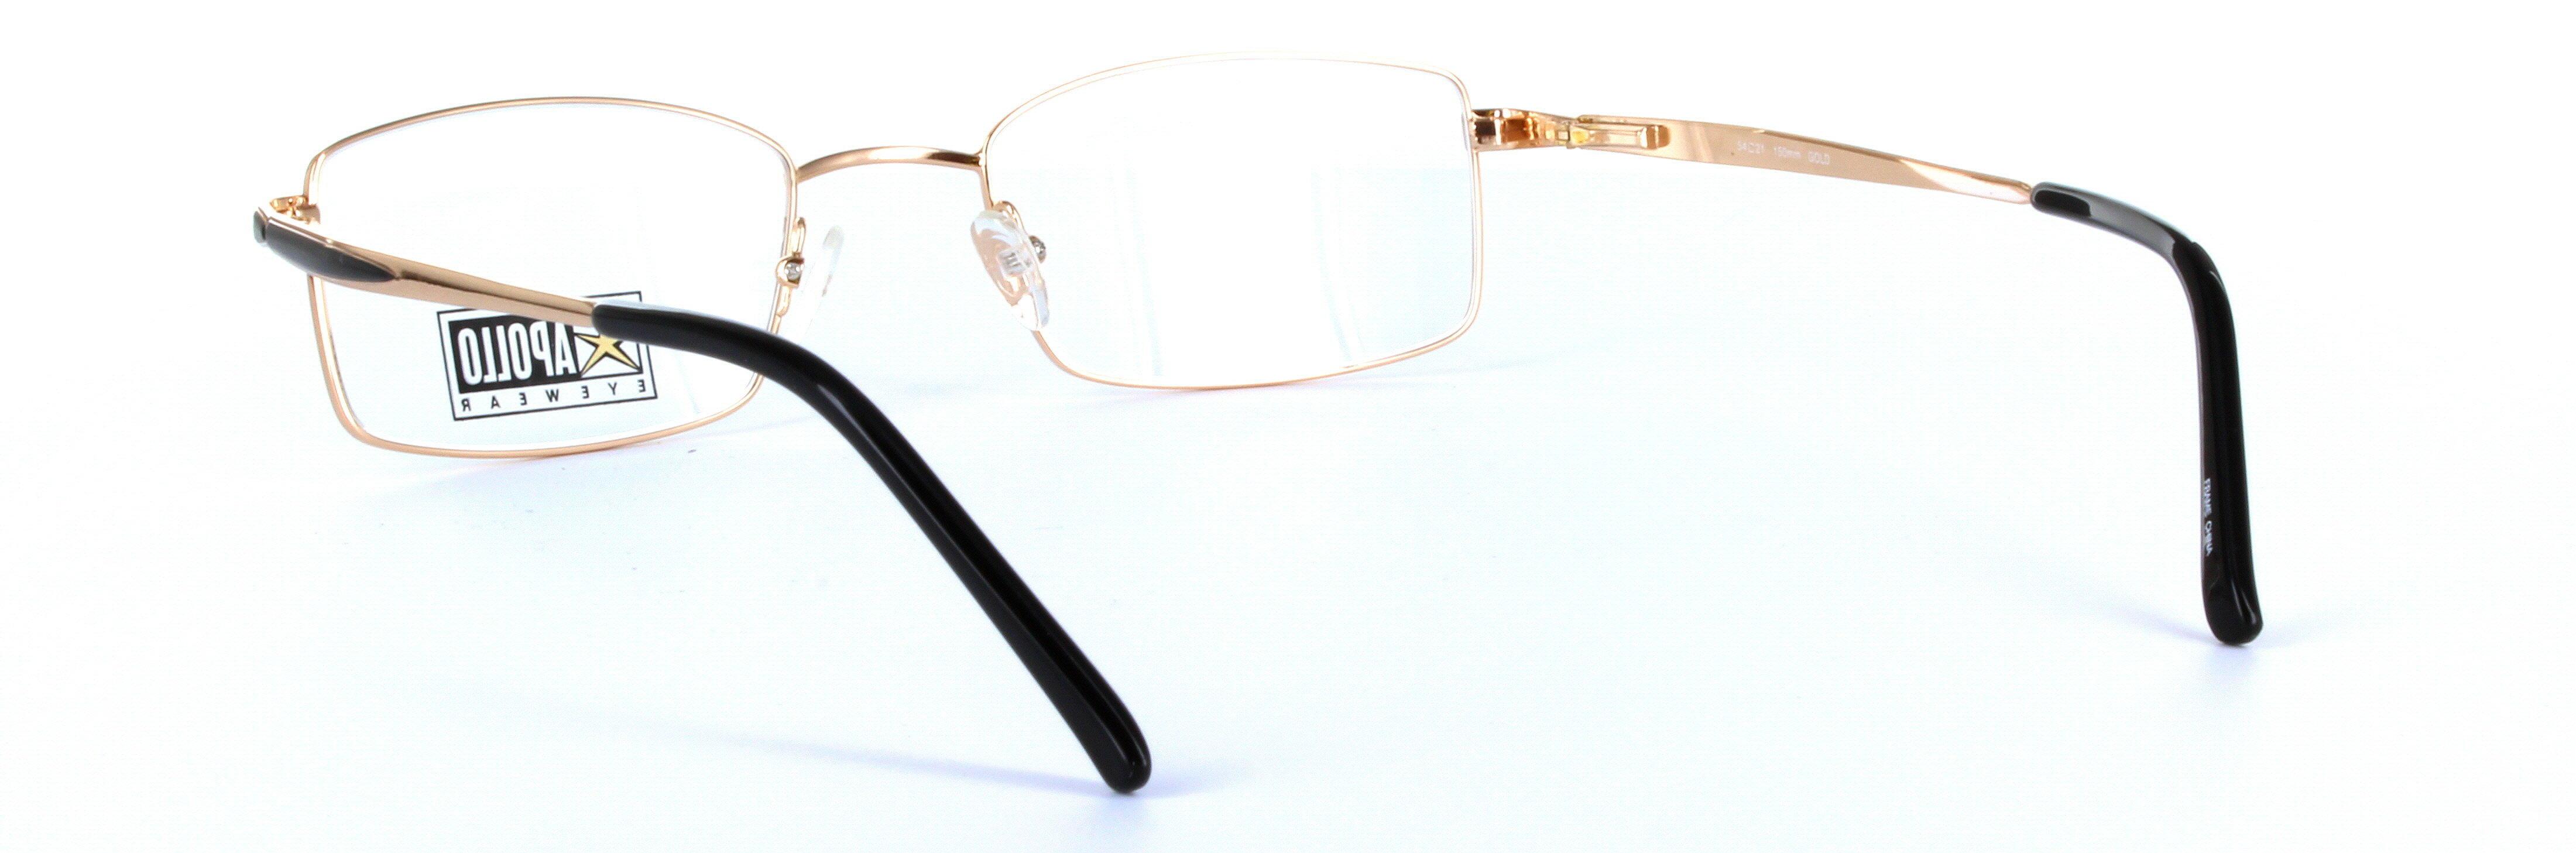 Gold Full Rim Rectangular Metal Glasses Chianti - Image View 3